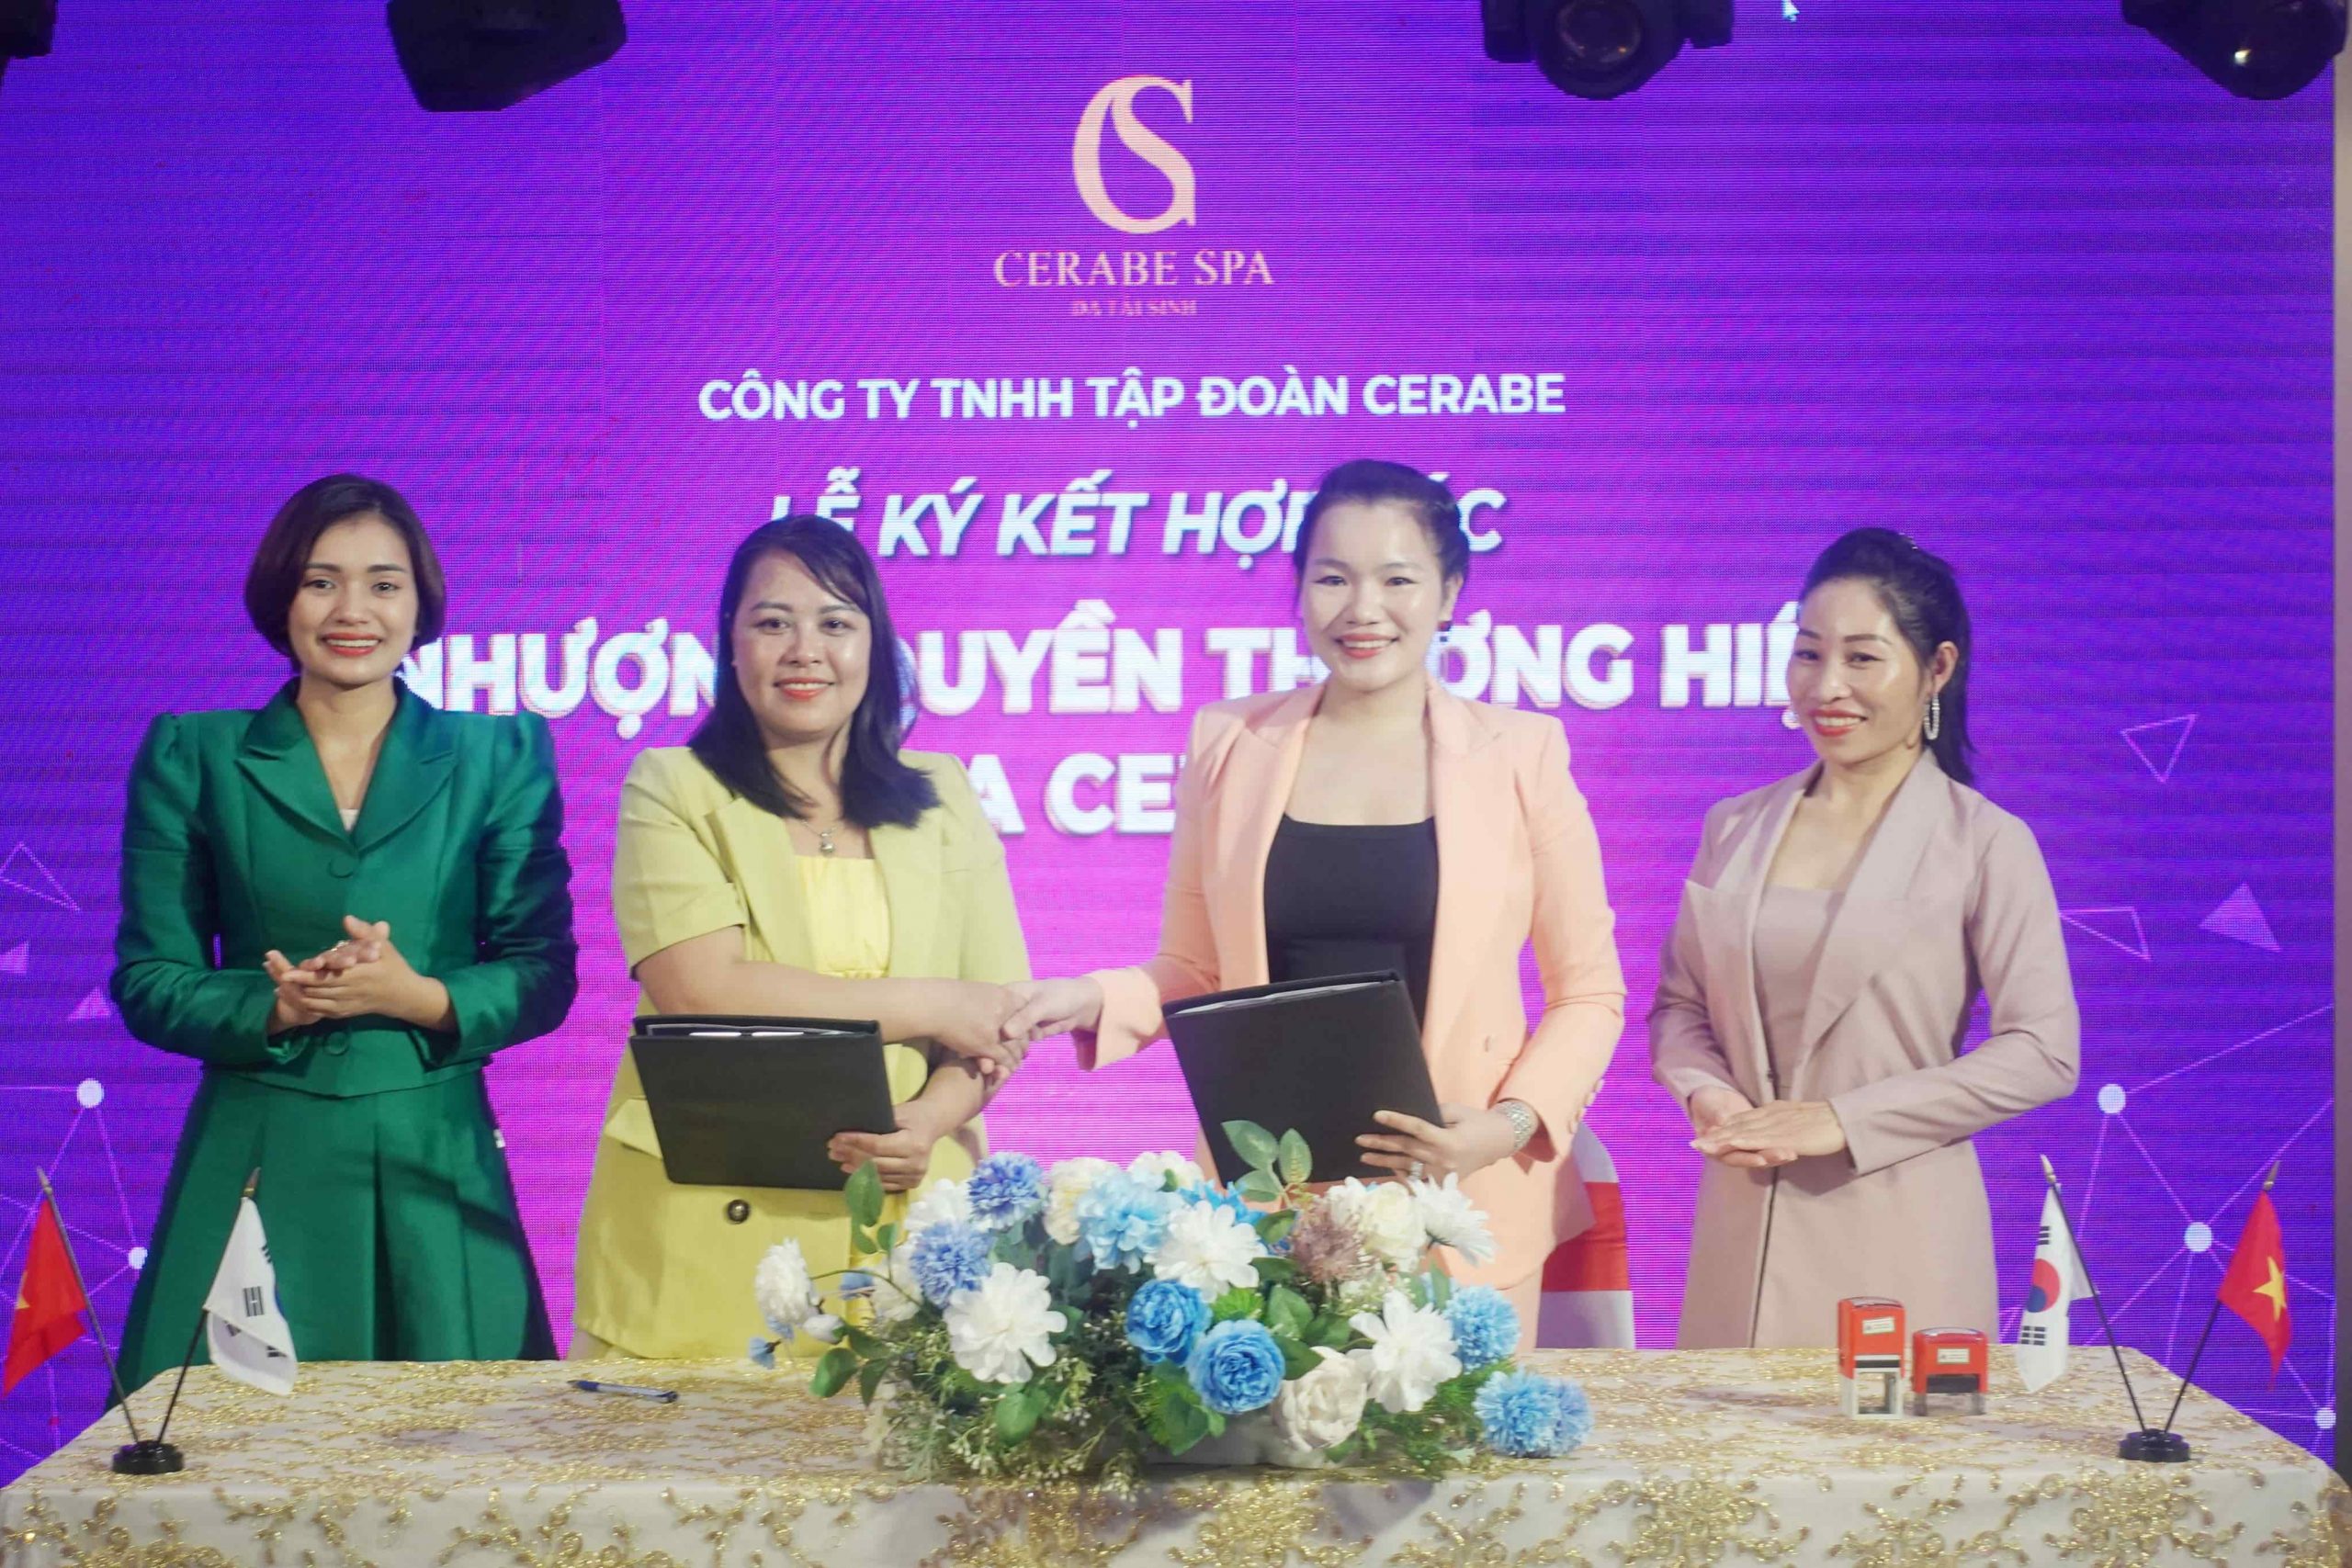 Chúc mừng CEO Nguyễn Thị Công đã có buổi ký kết hợp tác với Chuỗi nhượng quyền Cerabe Spa thành công, tốt đẹp